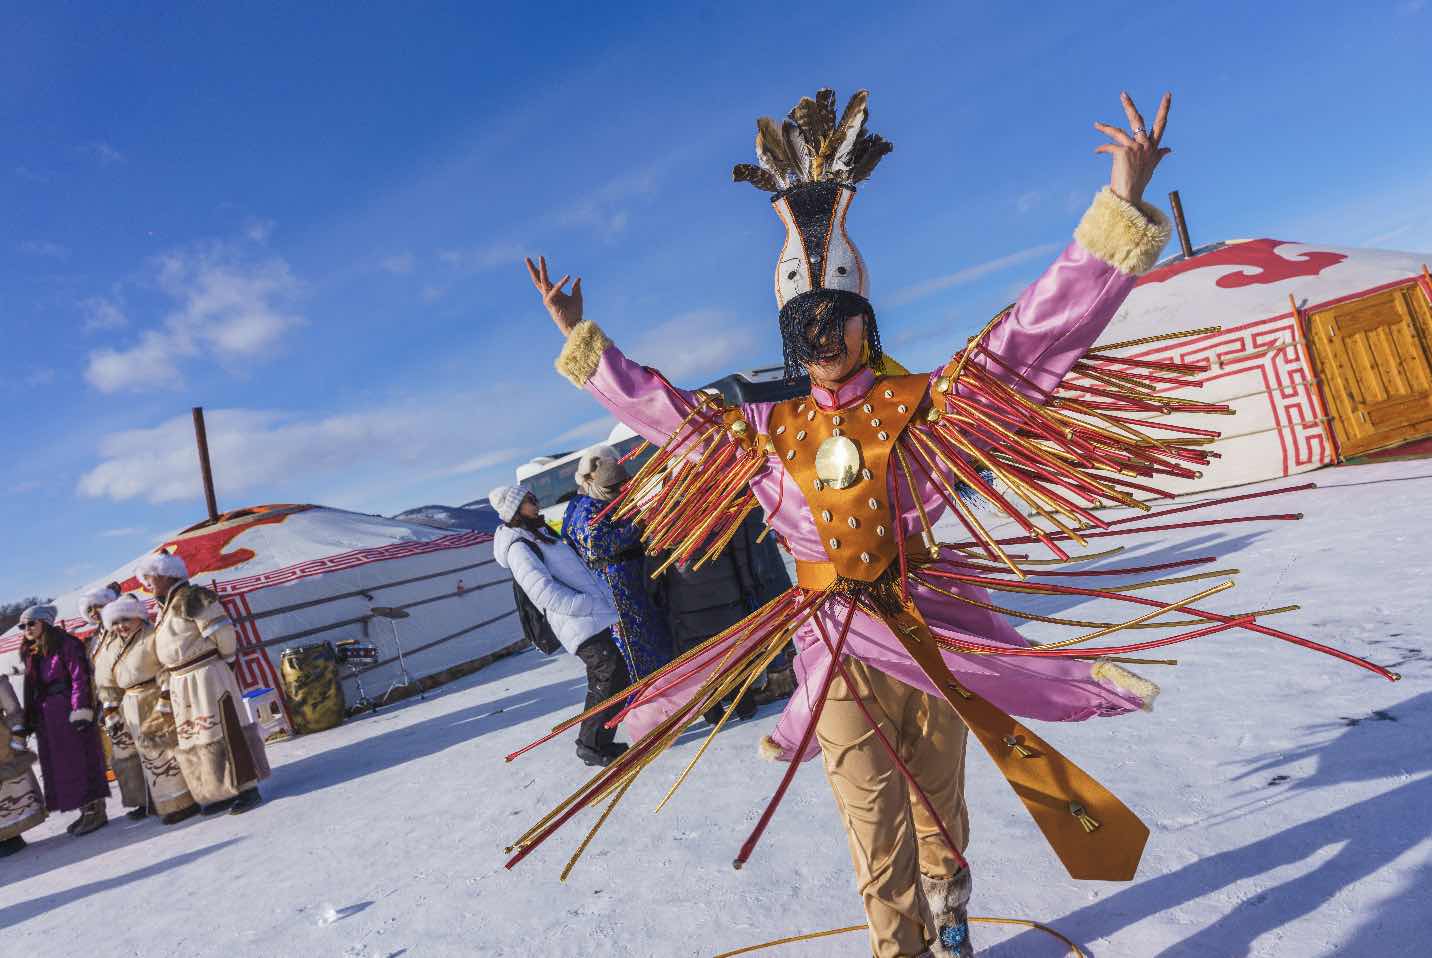 Traditionelles mongolisches Eisfestival mit winterlichen Aktivitäten